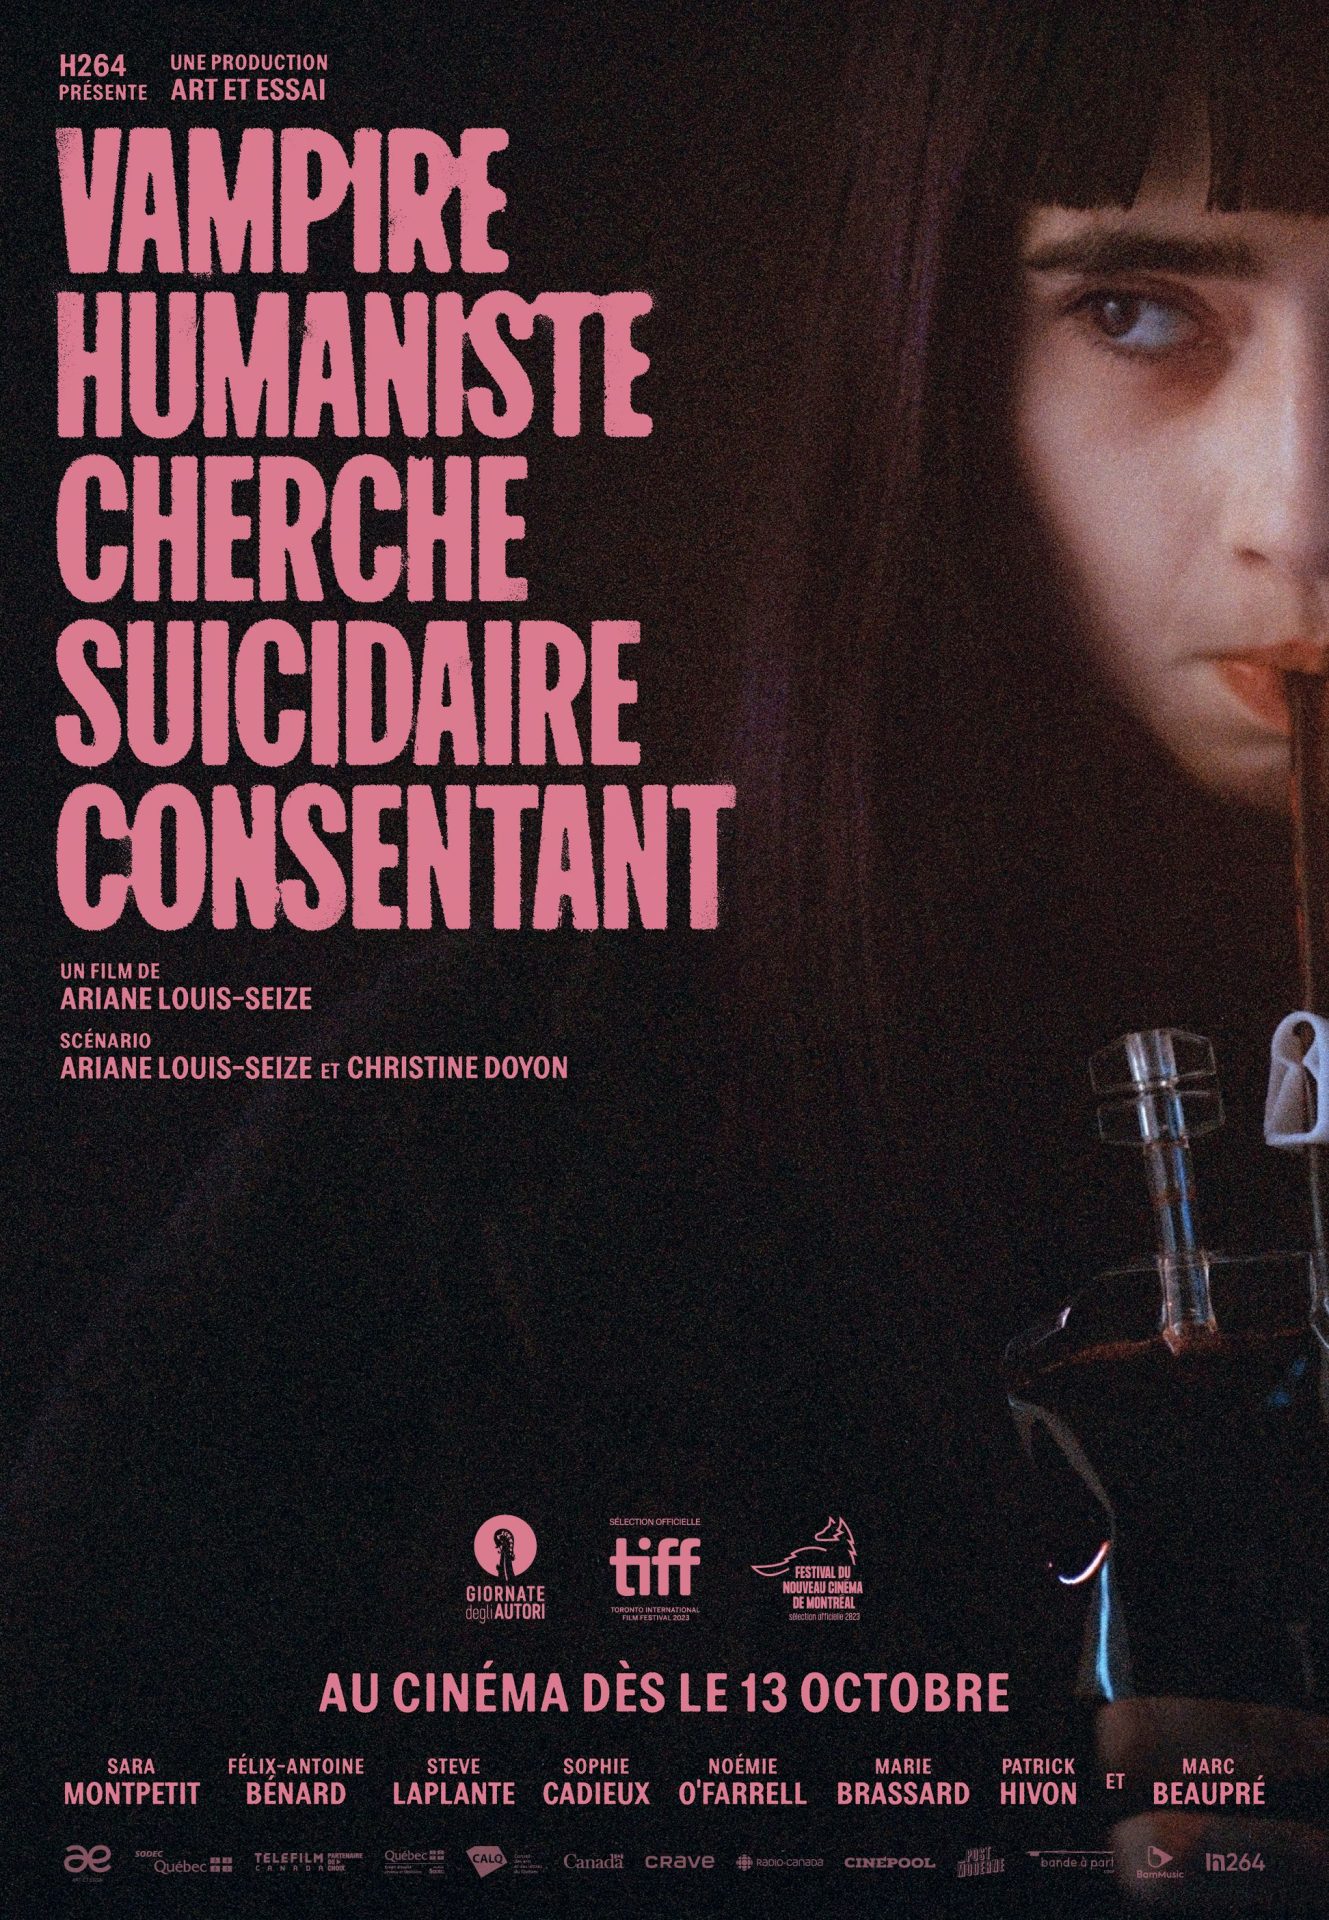 Le film "Vampire humaniste cherche suicidaire consentant"